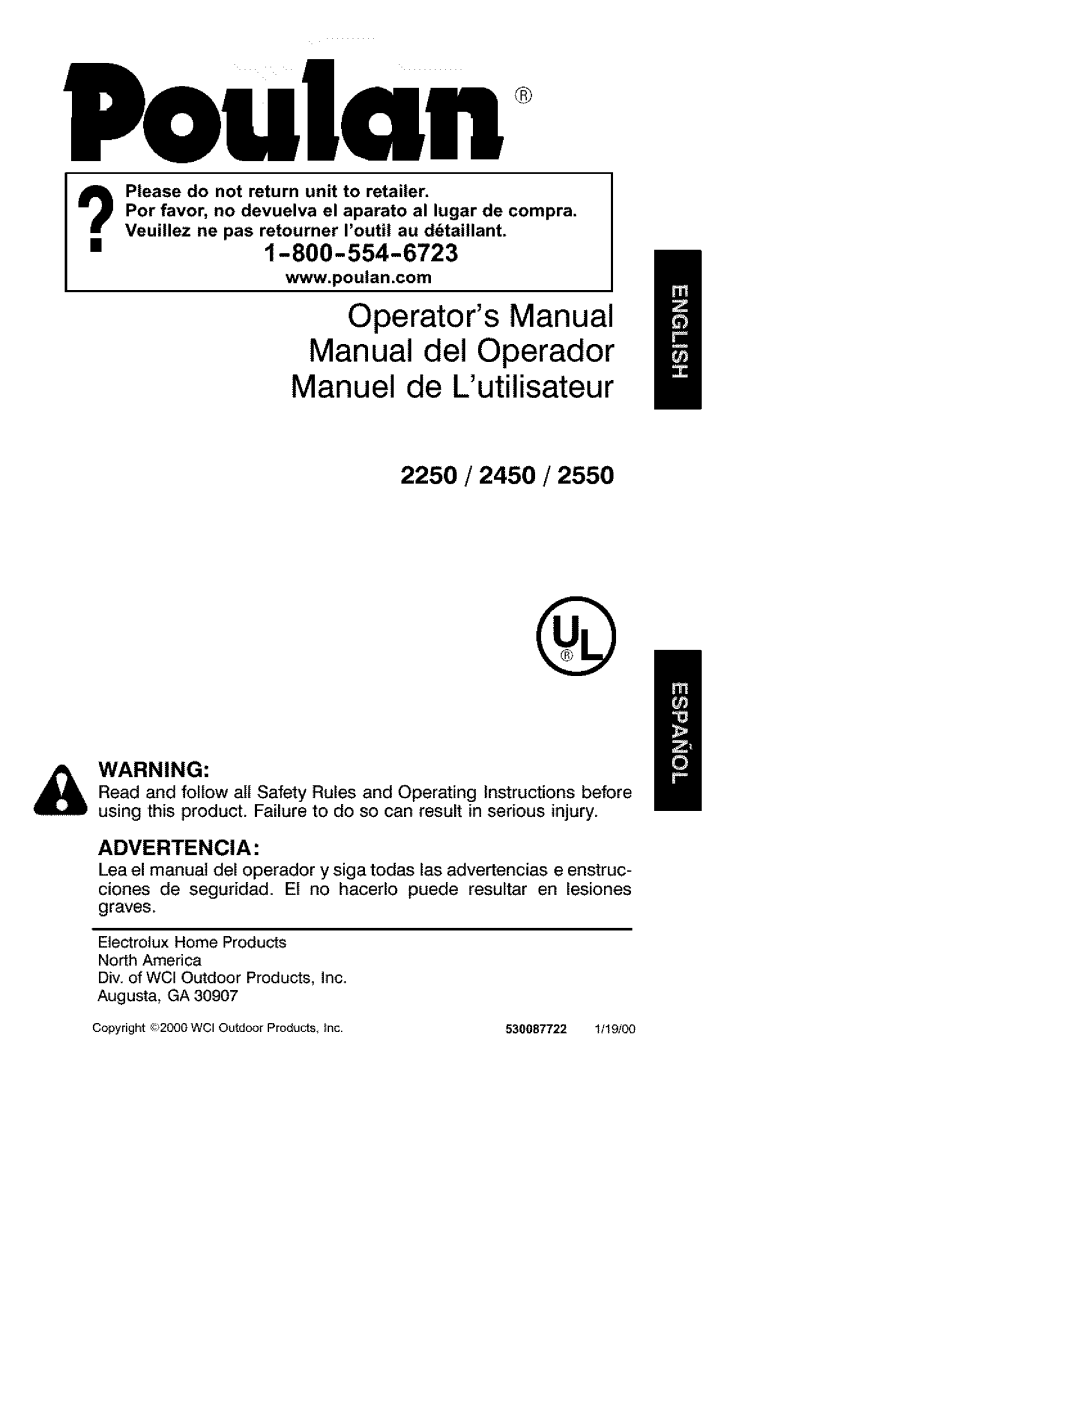 Poulan operating instructions 2250/2450/2550, Poulan, Operators Manual Manual del Operador, Manuel de Lutilisateur 